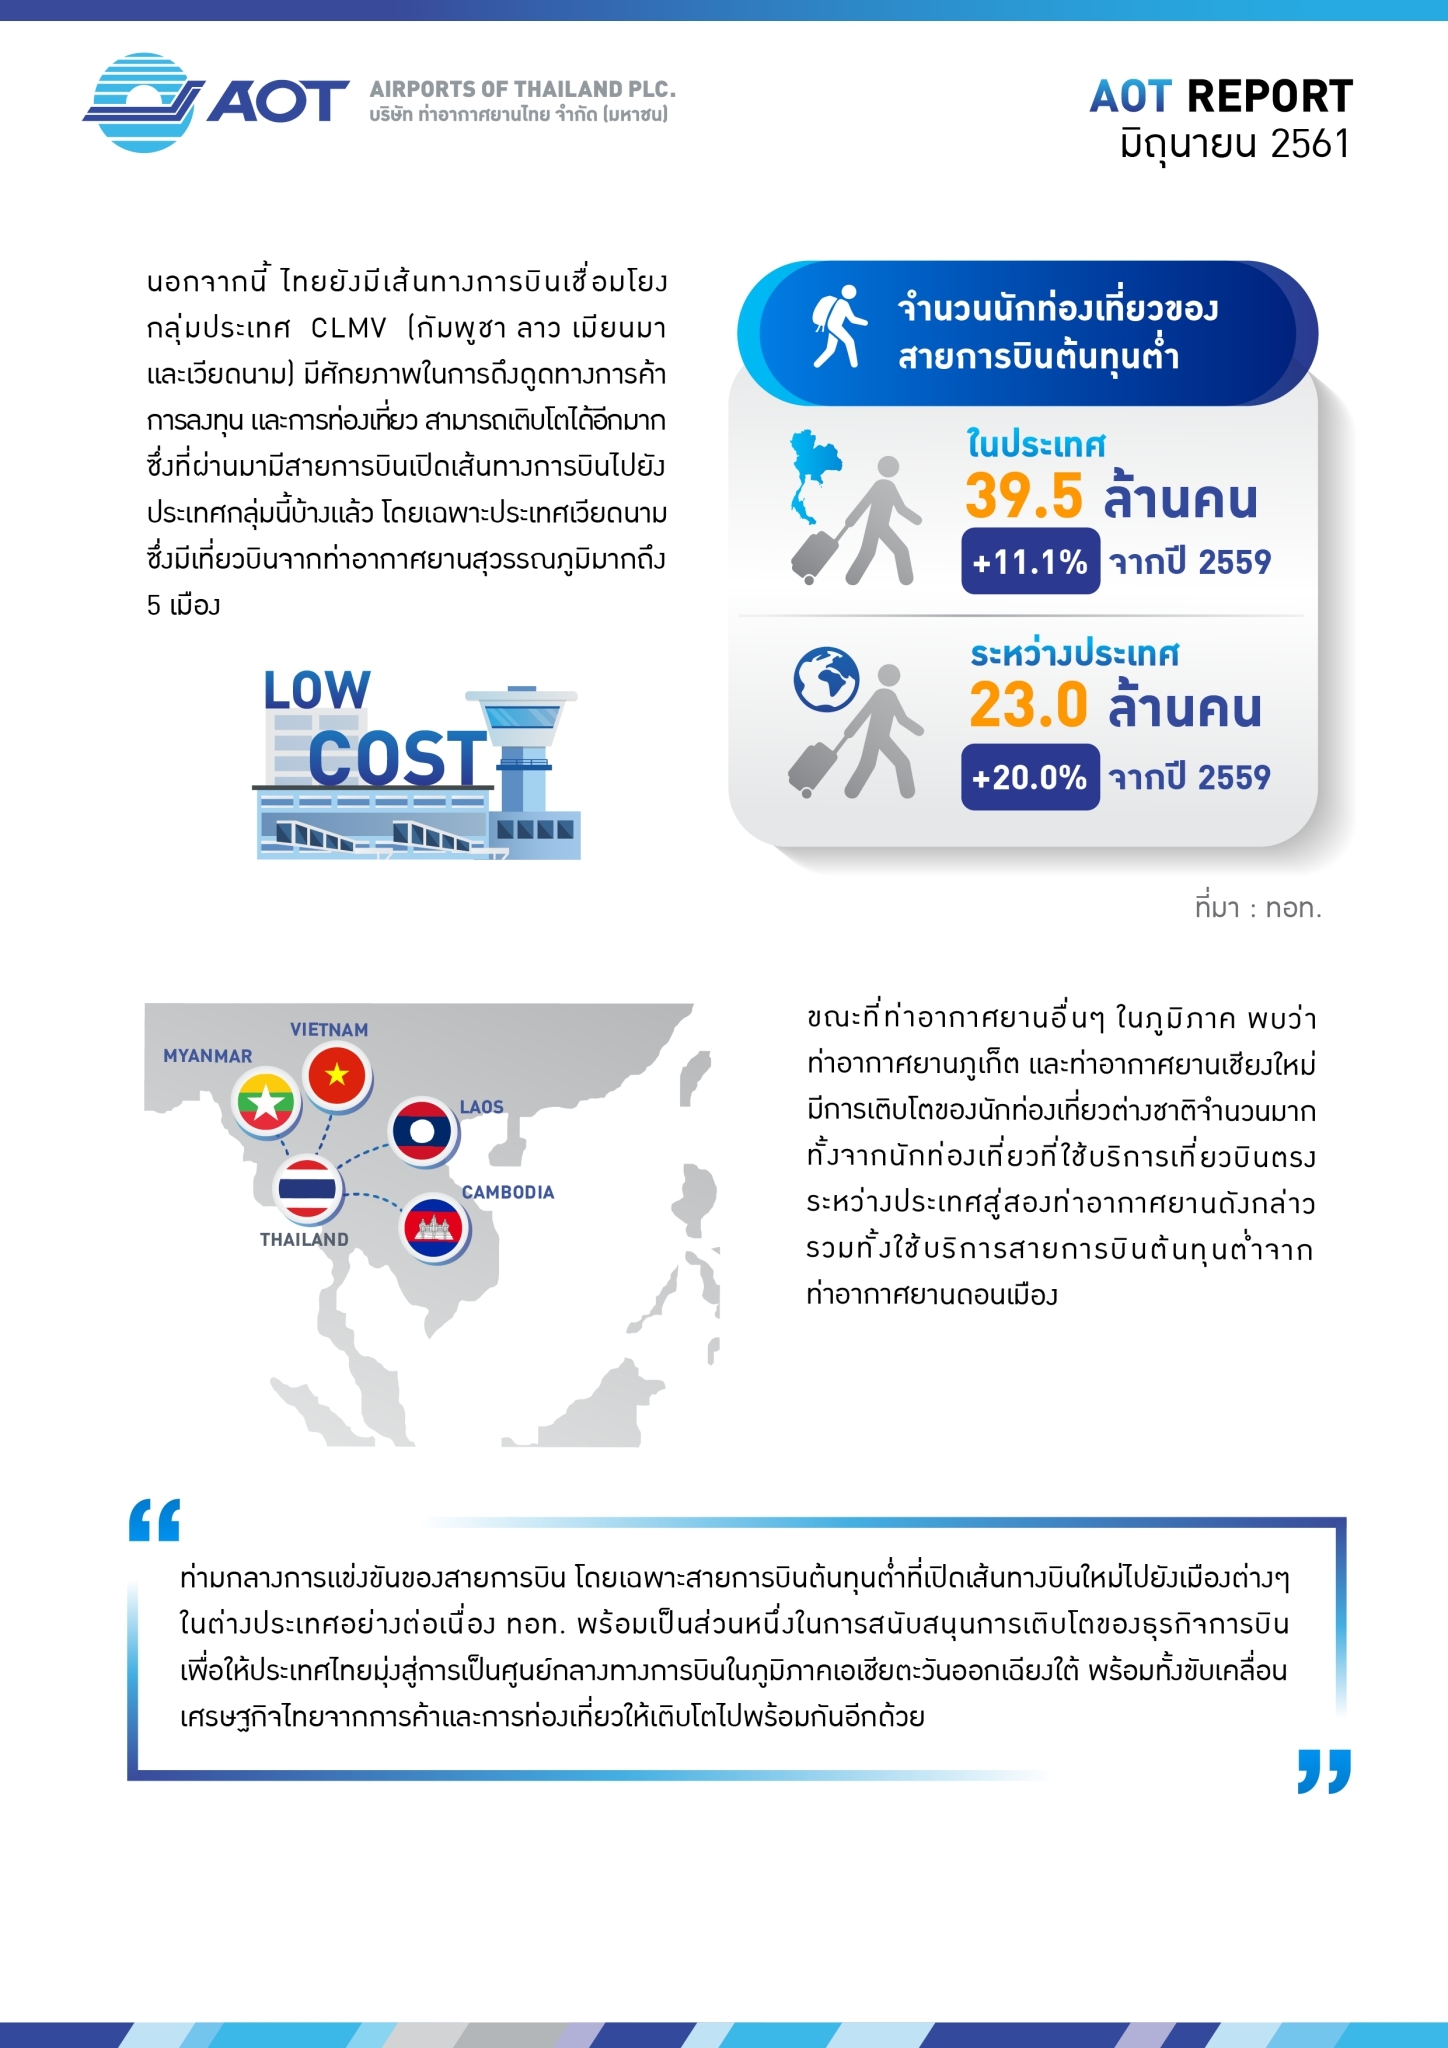 6 ท่าอากาศยานความต่างในหนึ่งเดียว Airports of Thailand